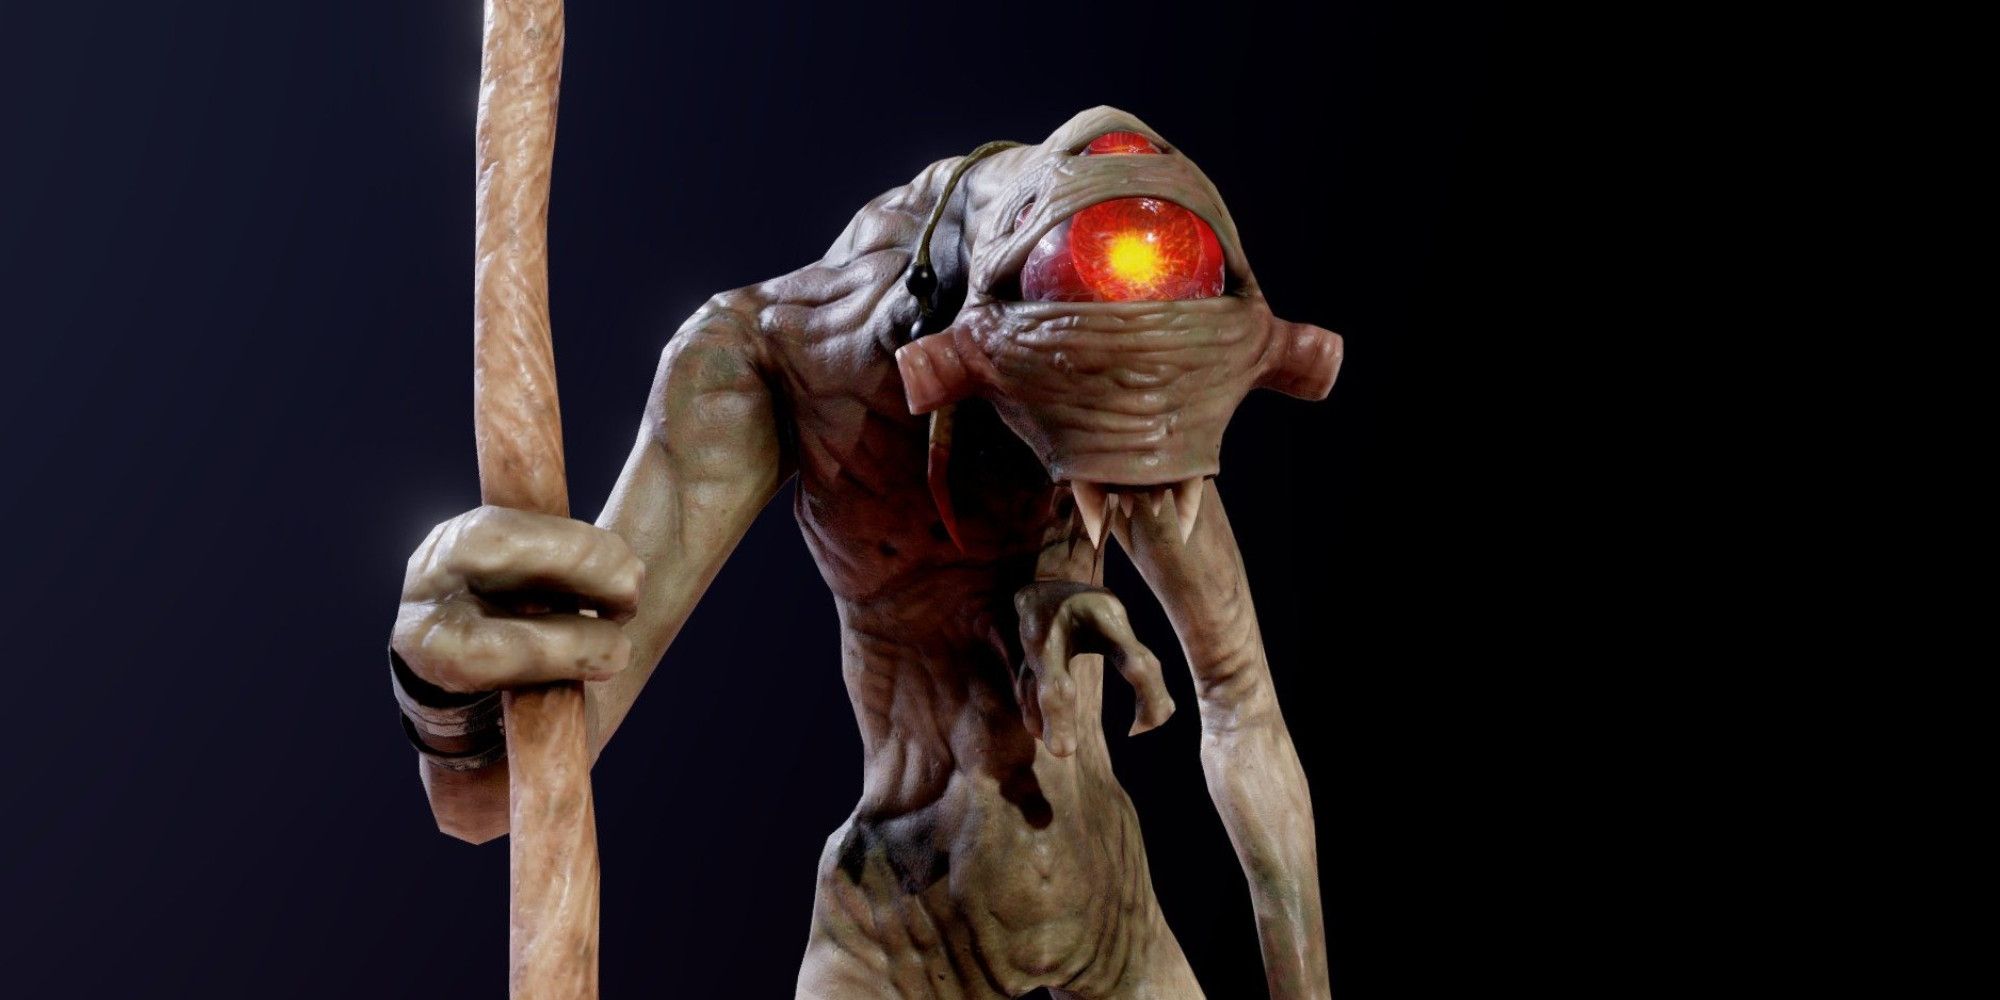 Vortigaunt alien in Half-Life